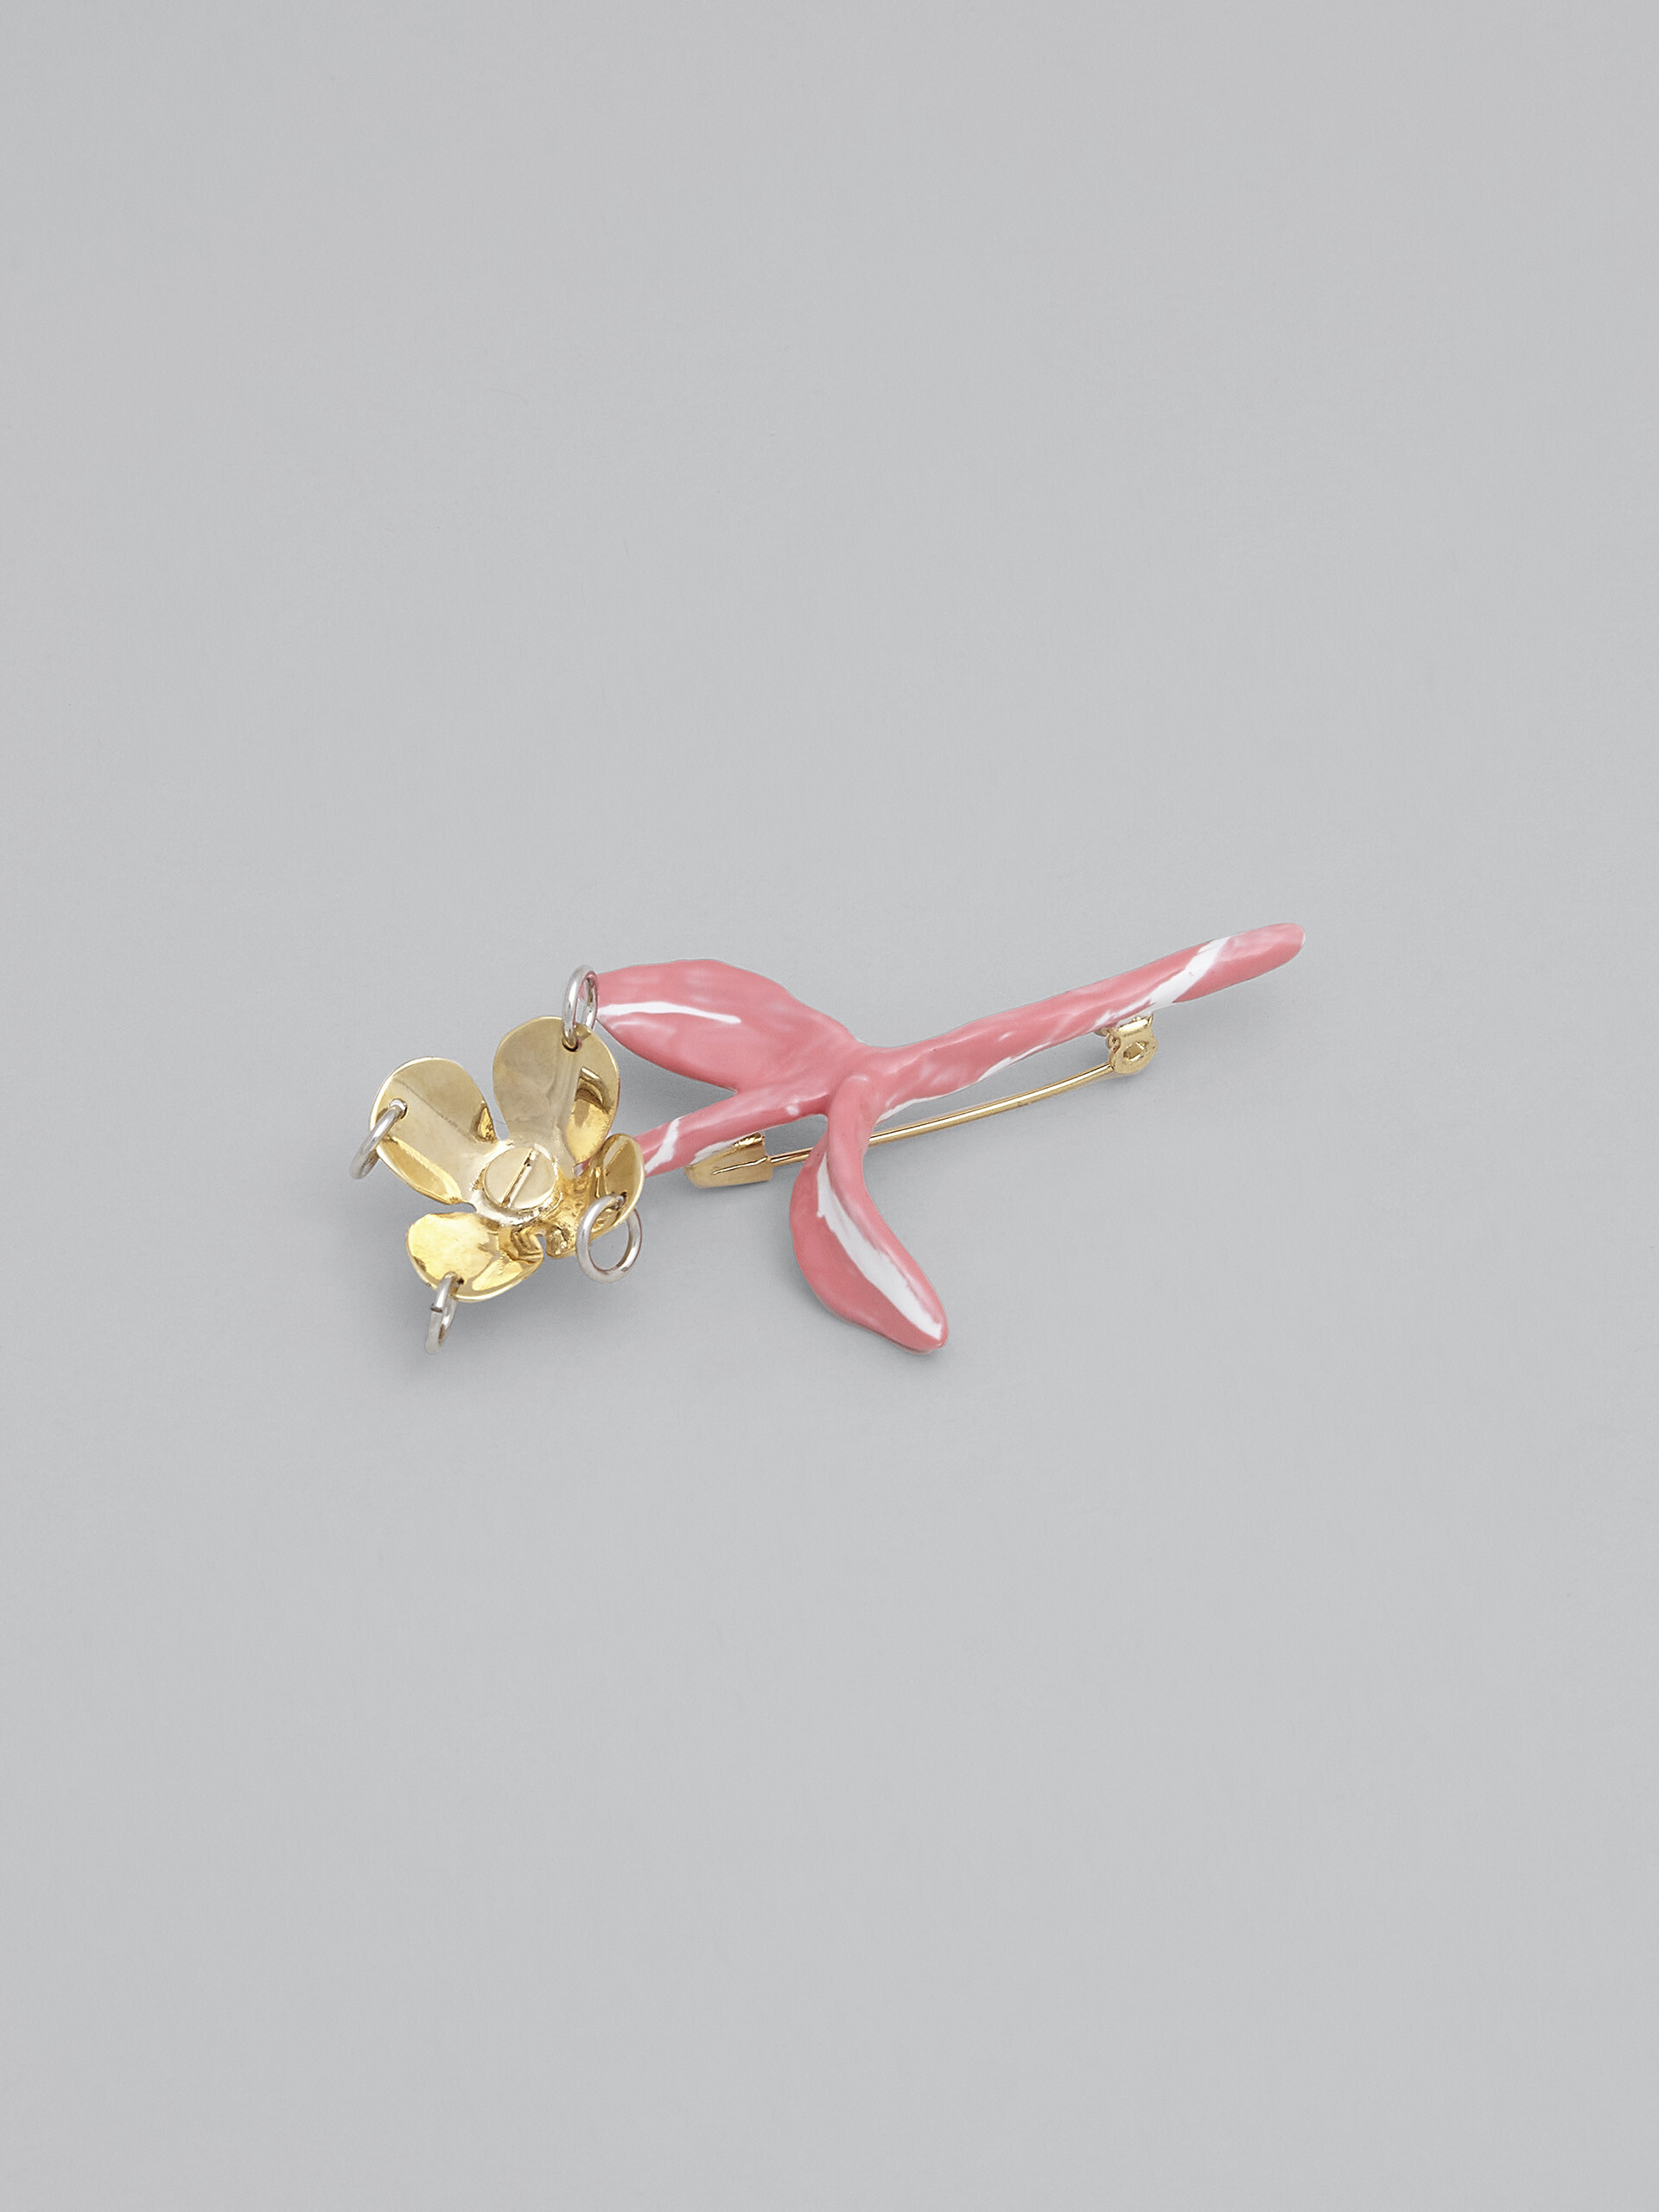 FLOWER pink brooch - Broach - Image 4